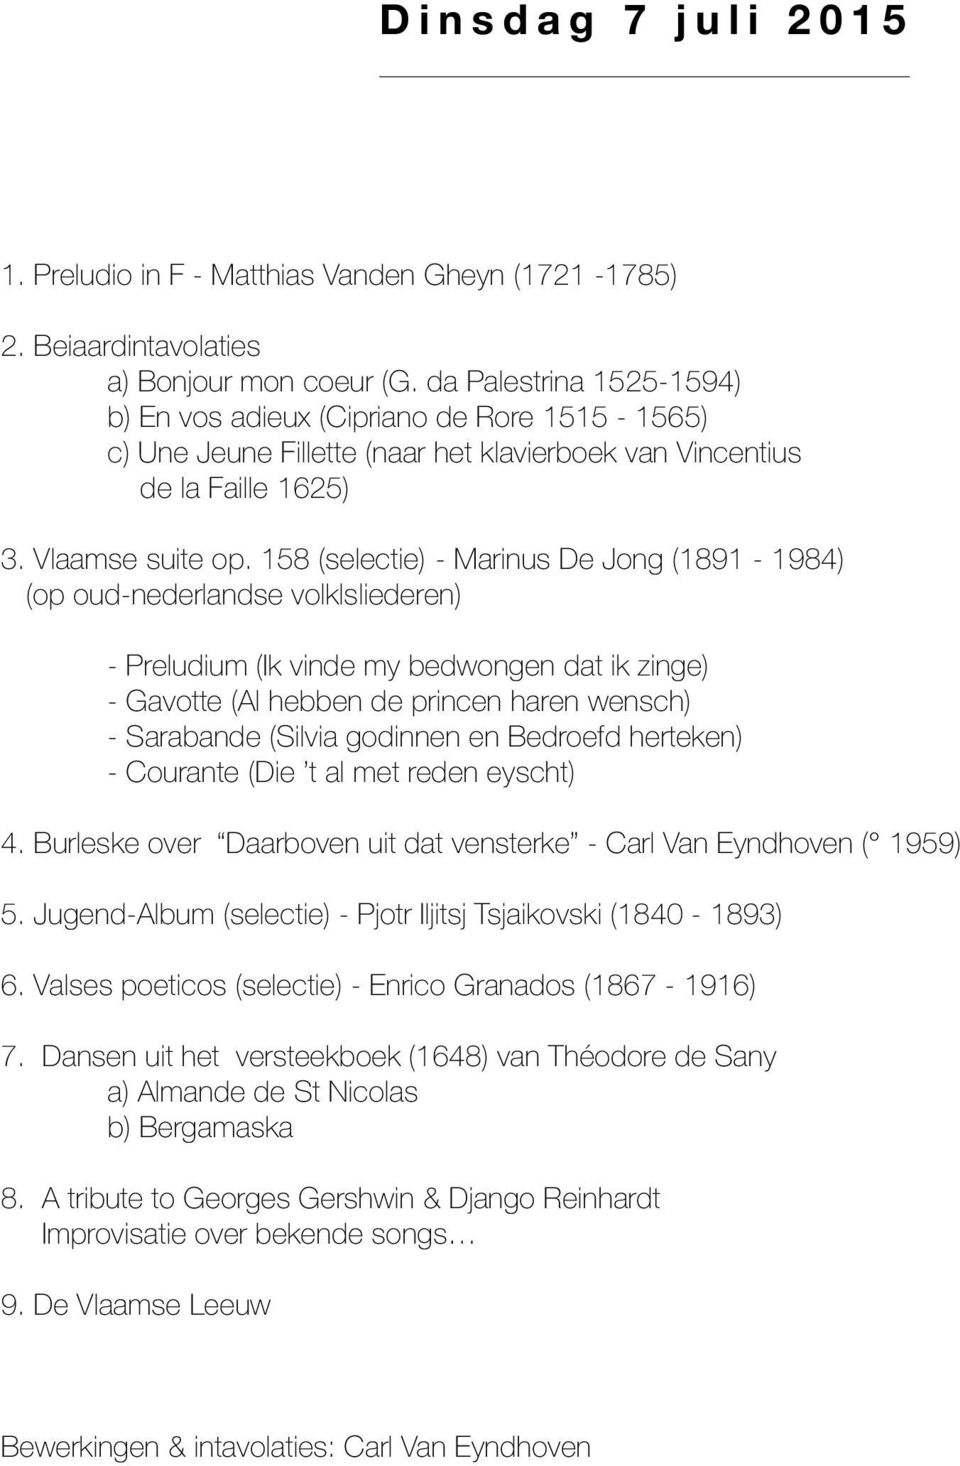 158 (selectie) - Marinus De Jong (1891-1984) (op oud-nederlandse volklsliederen) - Preludium (Ik vinde my bedwongen dat ik zinge) - Gavotte (Al hebben de princen haren wensch) - Sarabande (Silvia